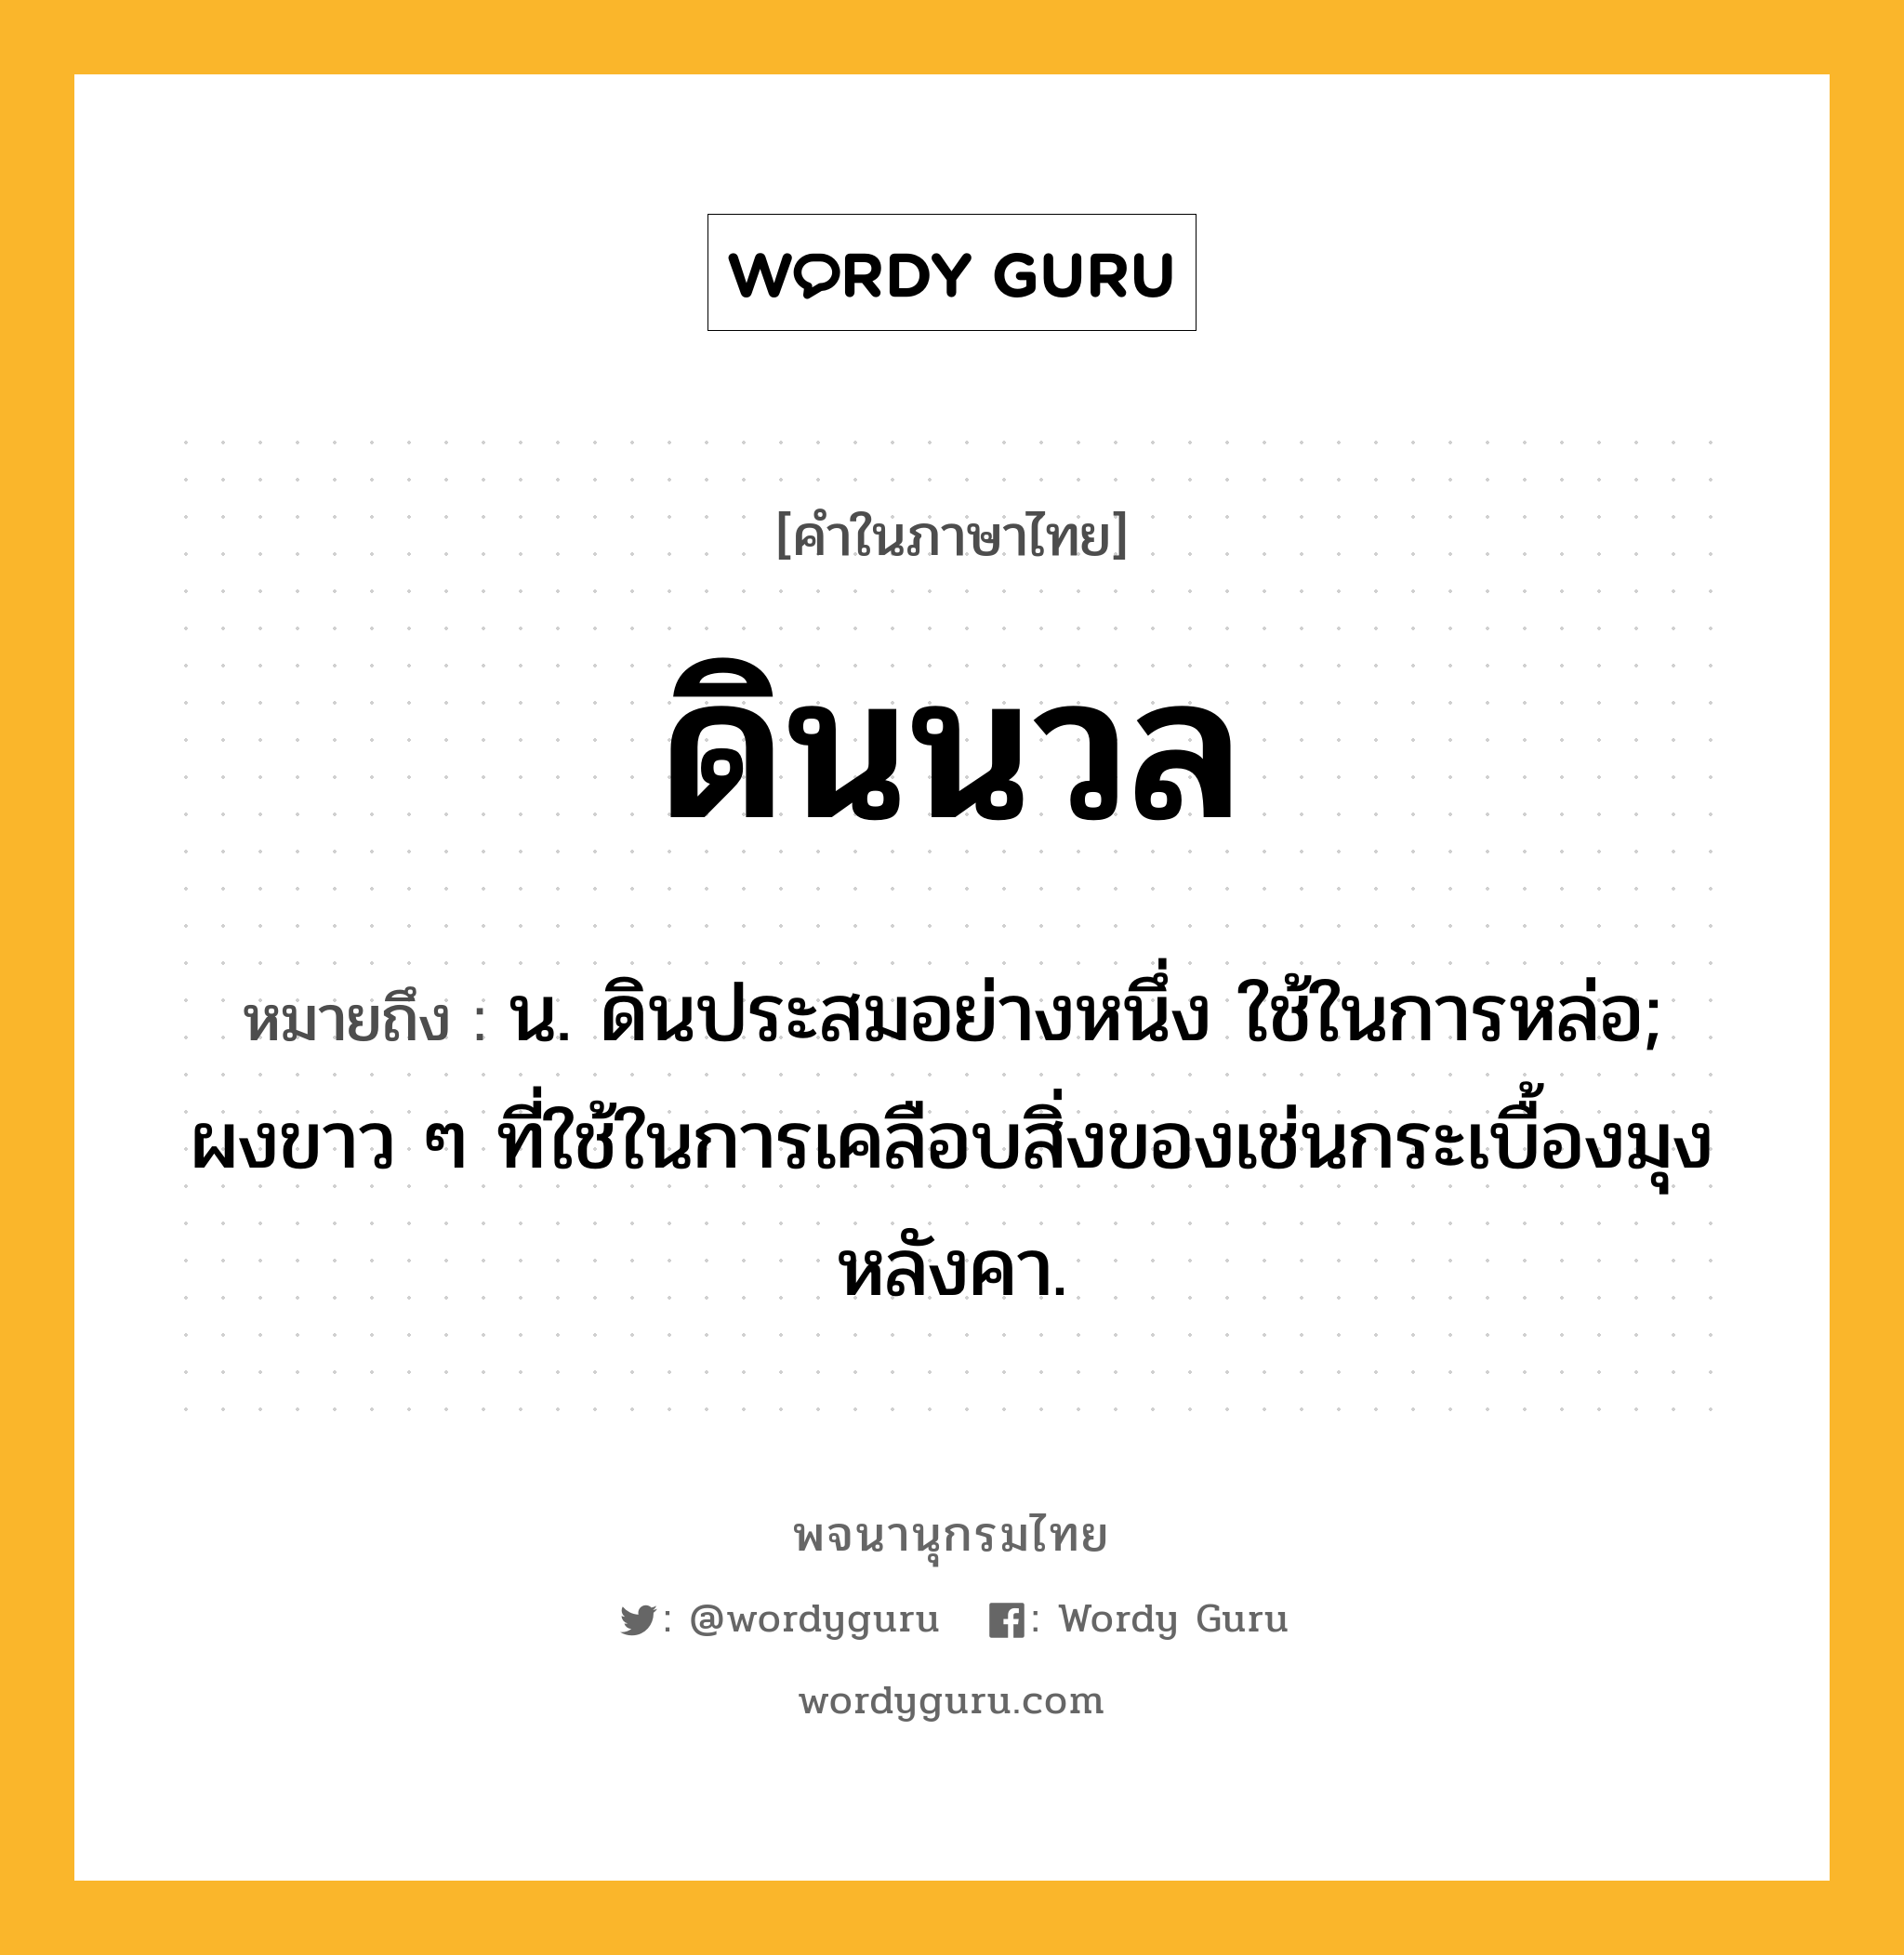 ดินนวล หมายถึงอะไร?, คำในภาษาไทย ดินนวล หมายถึง น. ดินประสมอย่างหนึ่ง ใช้ในการหล่อ; ผงขาว ๆ ที่ใช้ในการเคลือบสิ่งของเช่นกระเบื้องมุงหลังคา.